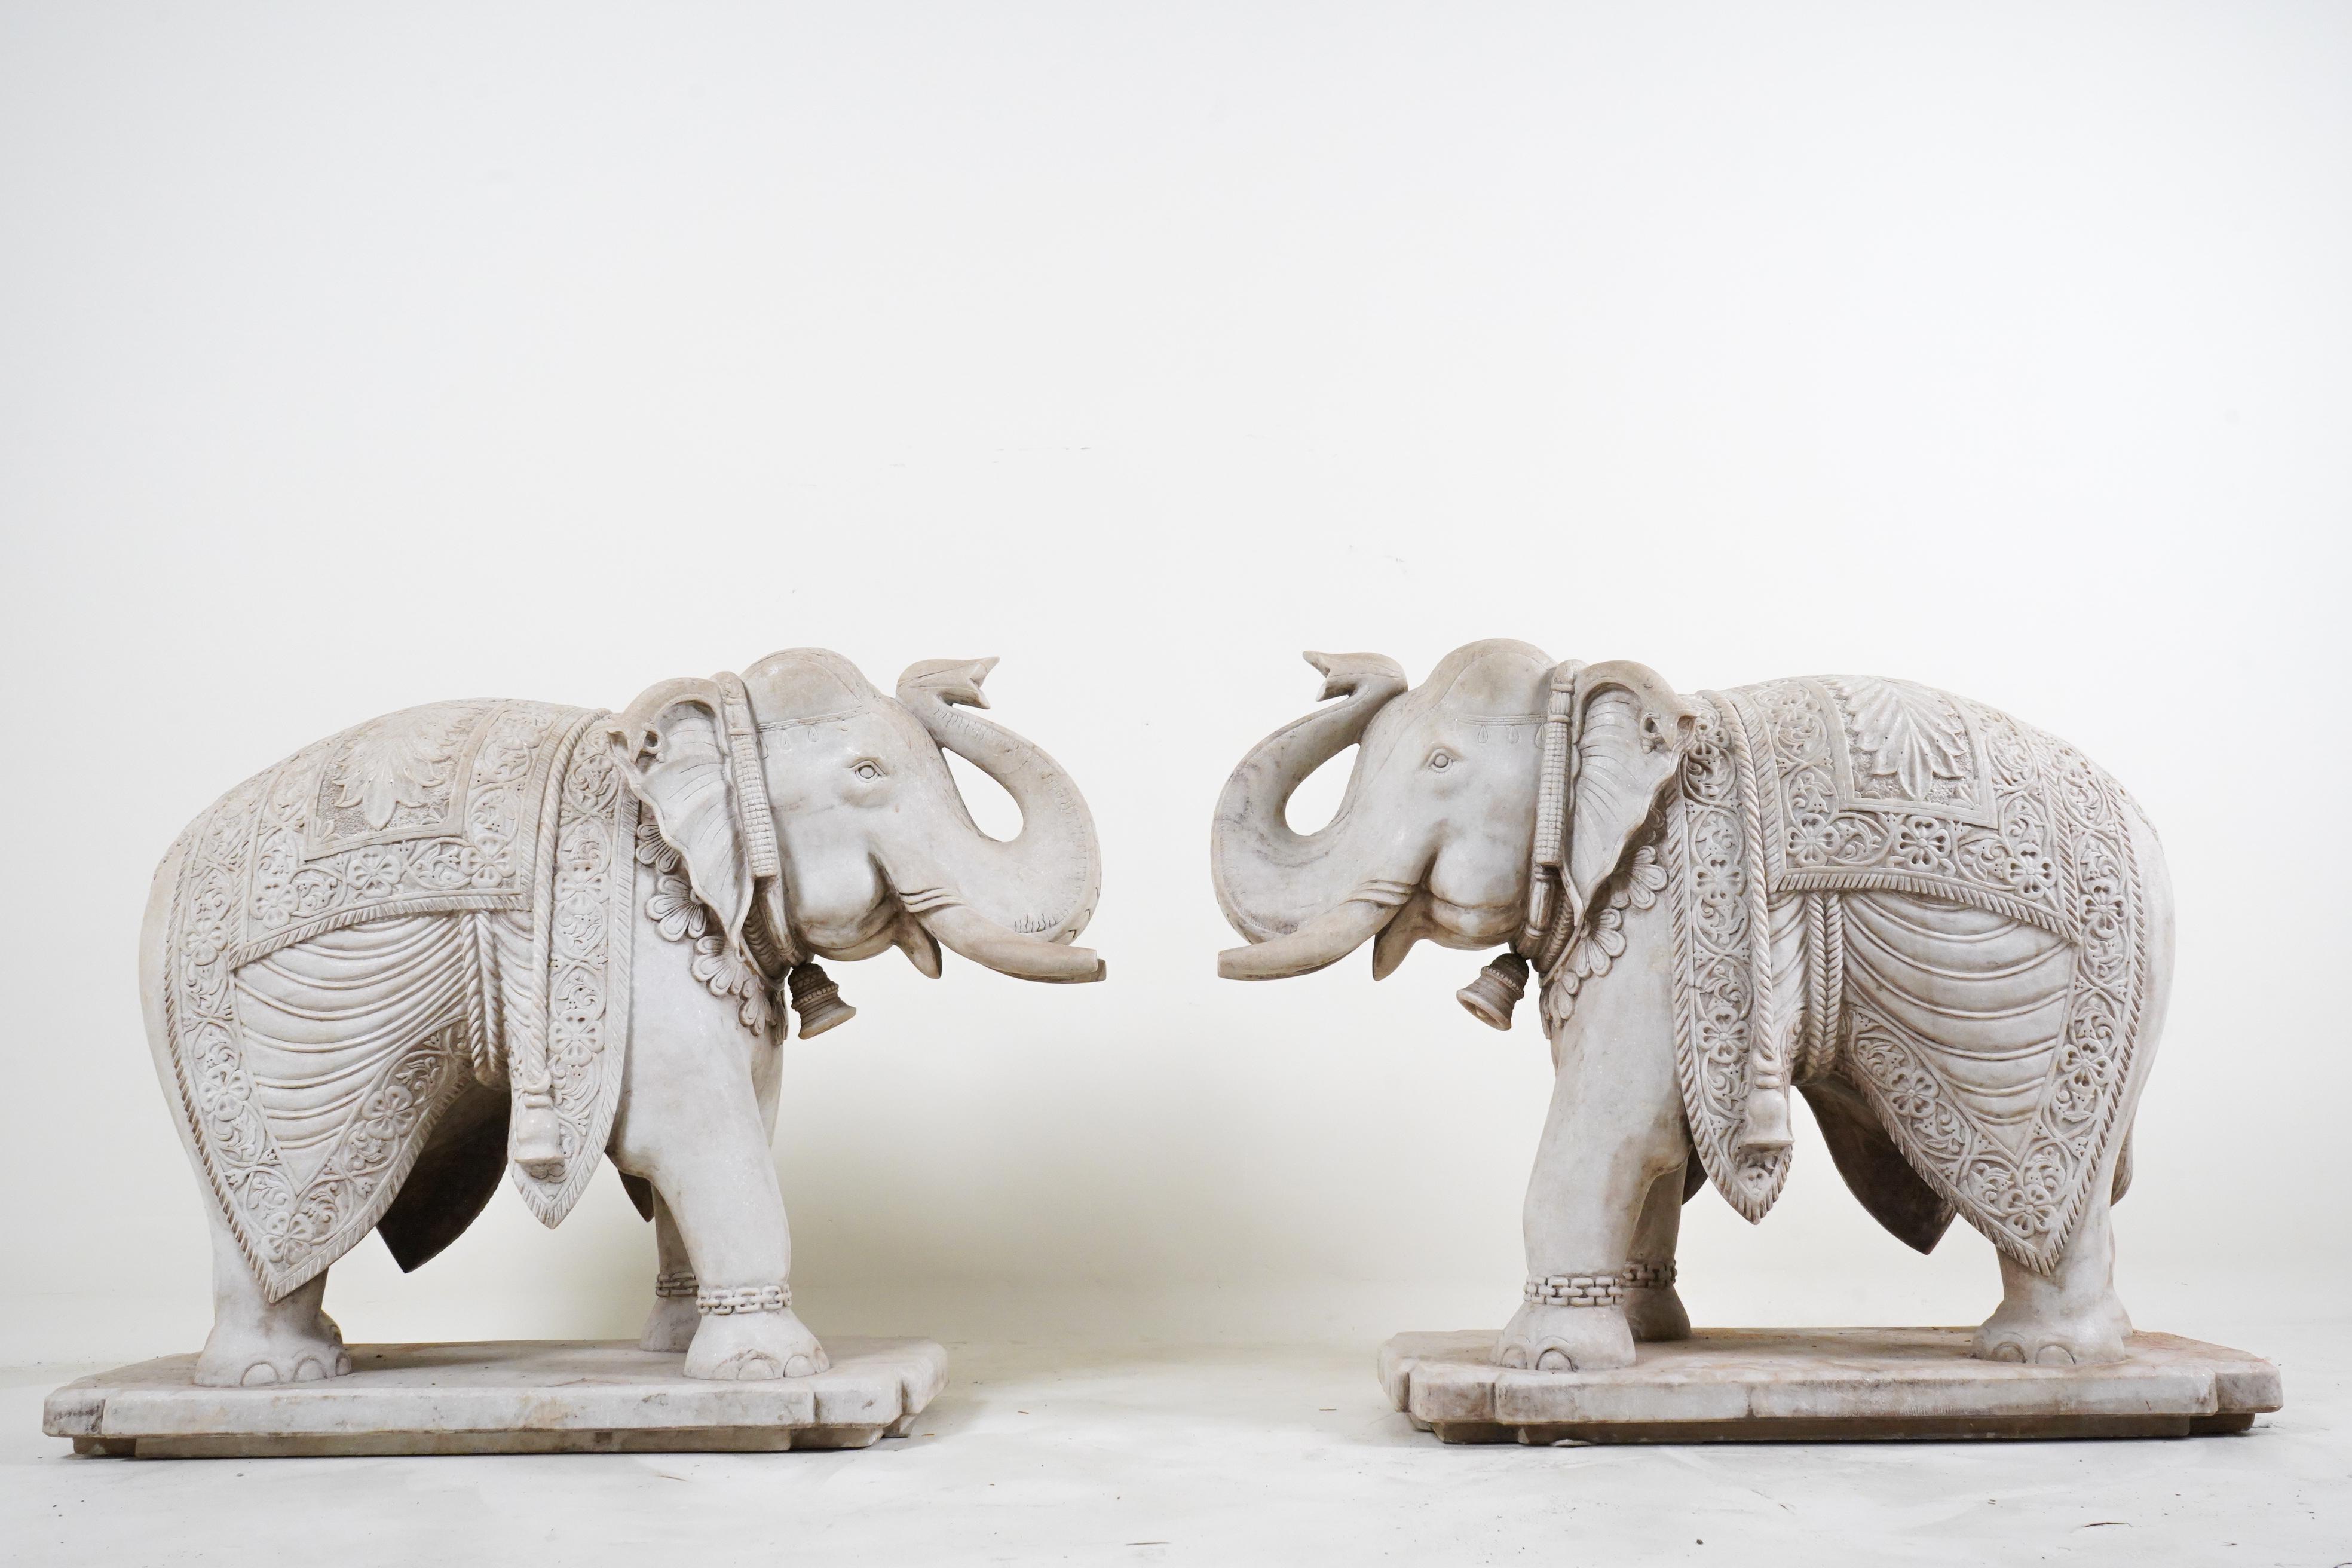 Il s'agit d'une paire d'objets sculptés d'une grande finesse.  Éléphants indiens en marbre. Debout, à quatre pattes,  Ces magnifiques créatures incarnent l'élégance et la puissance. Sculptés dans du marbre blanc fin, leurs détails complexes et leurs